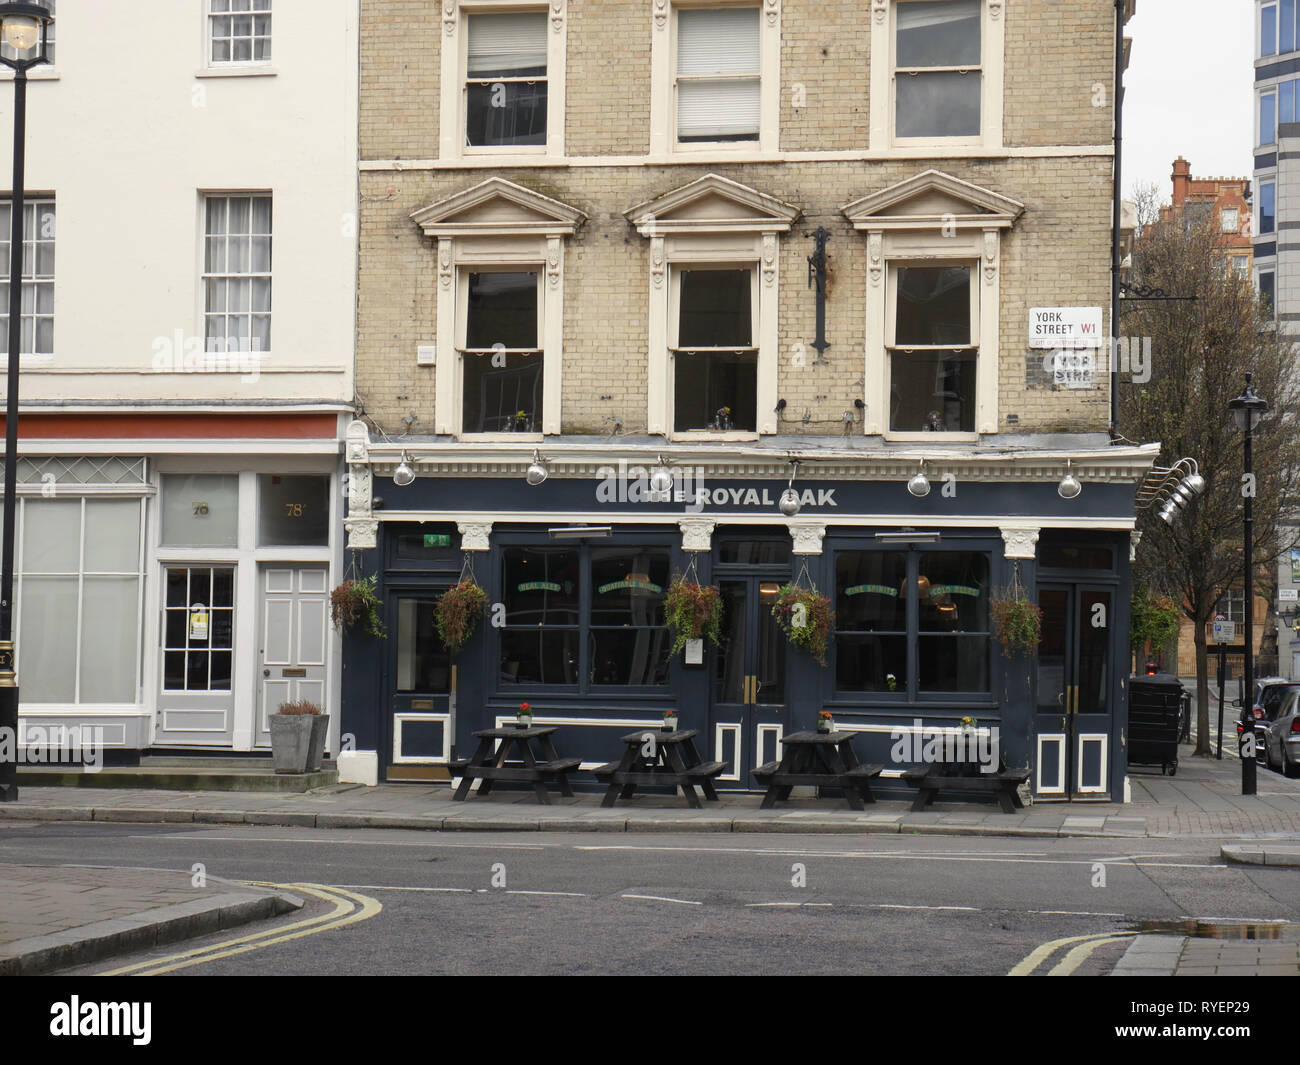 Royal Oak, Marylebone, London. UK Stock Photo